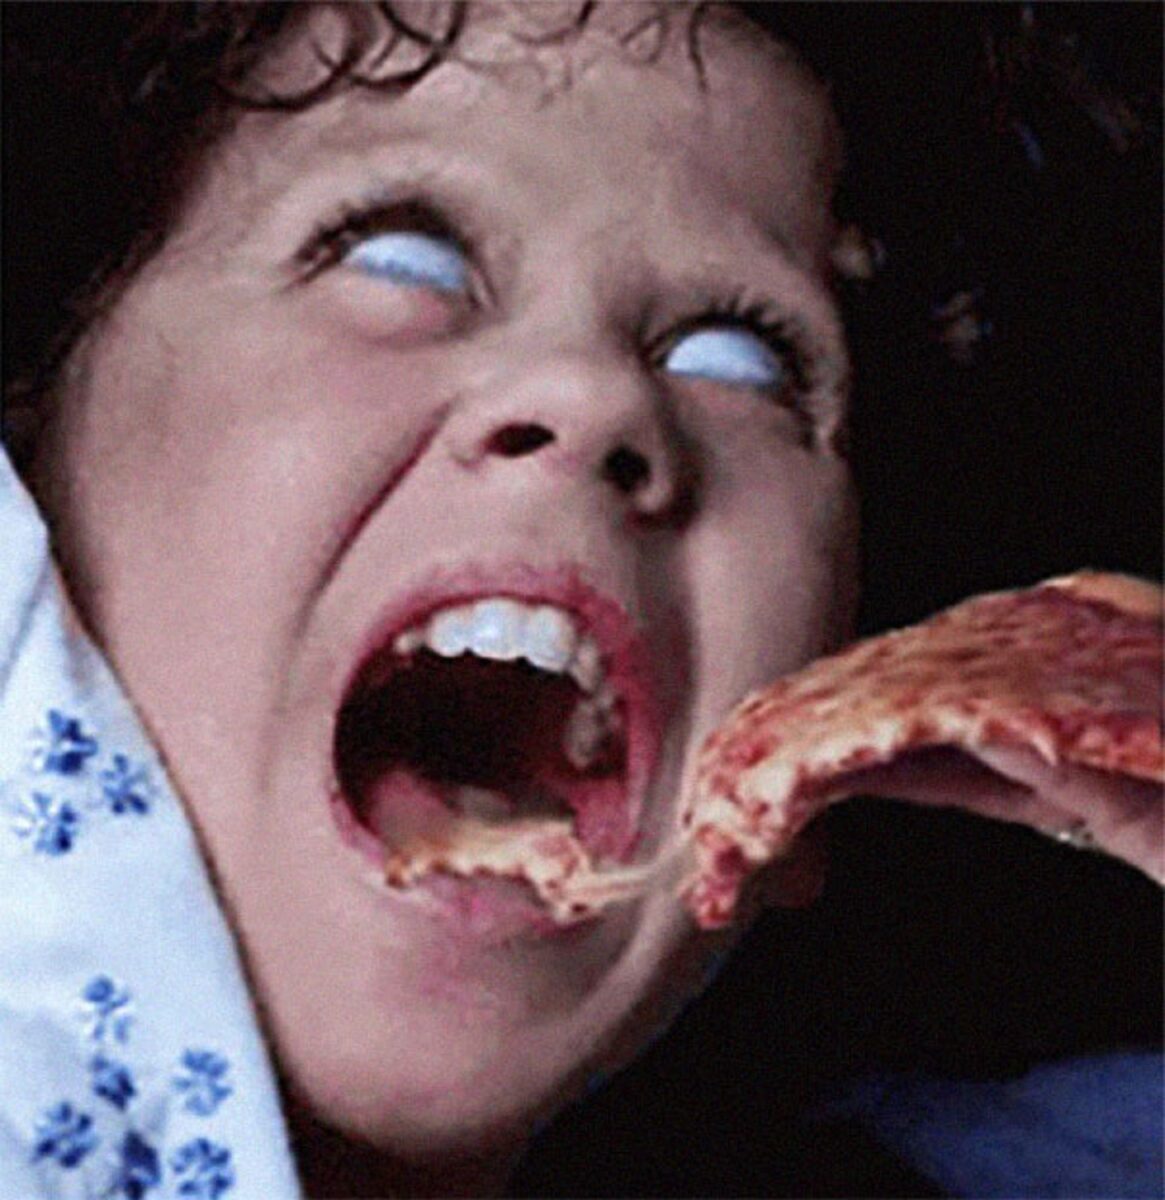 Pizzas adicionadas em filmes de terror atraves do Photoshop 7